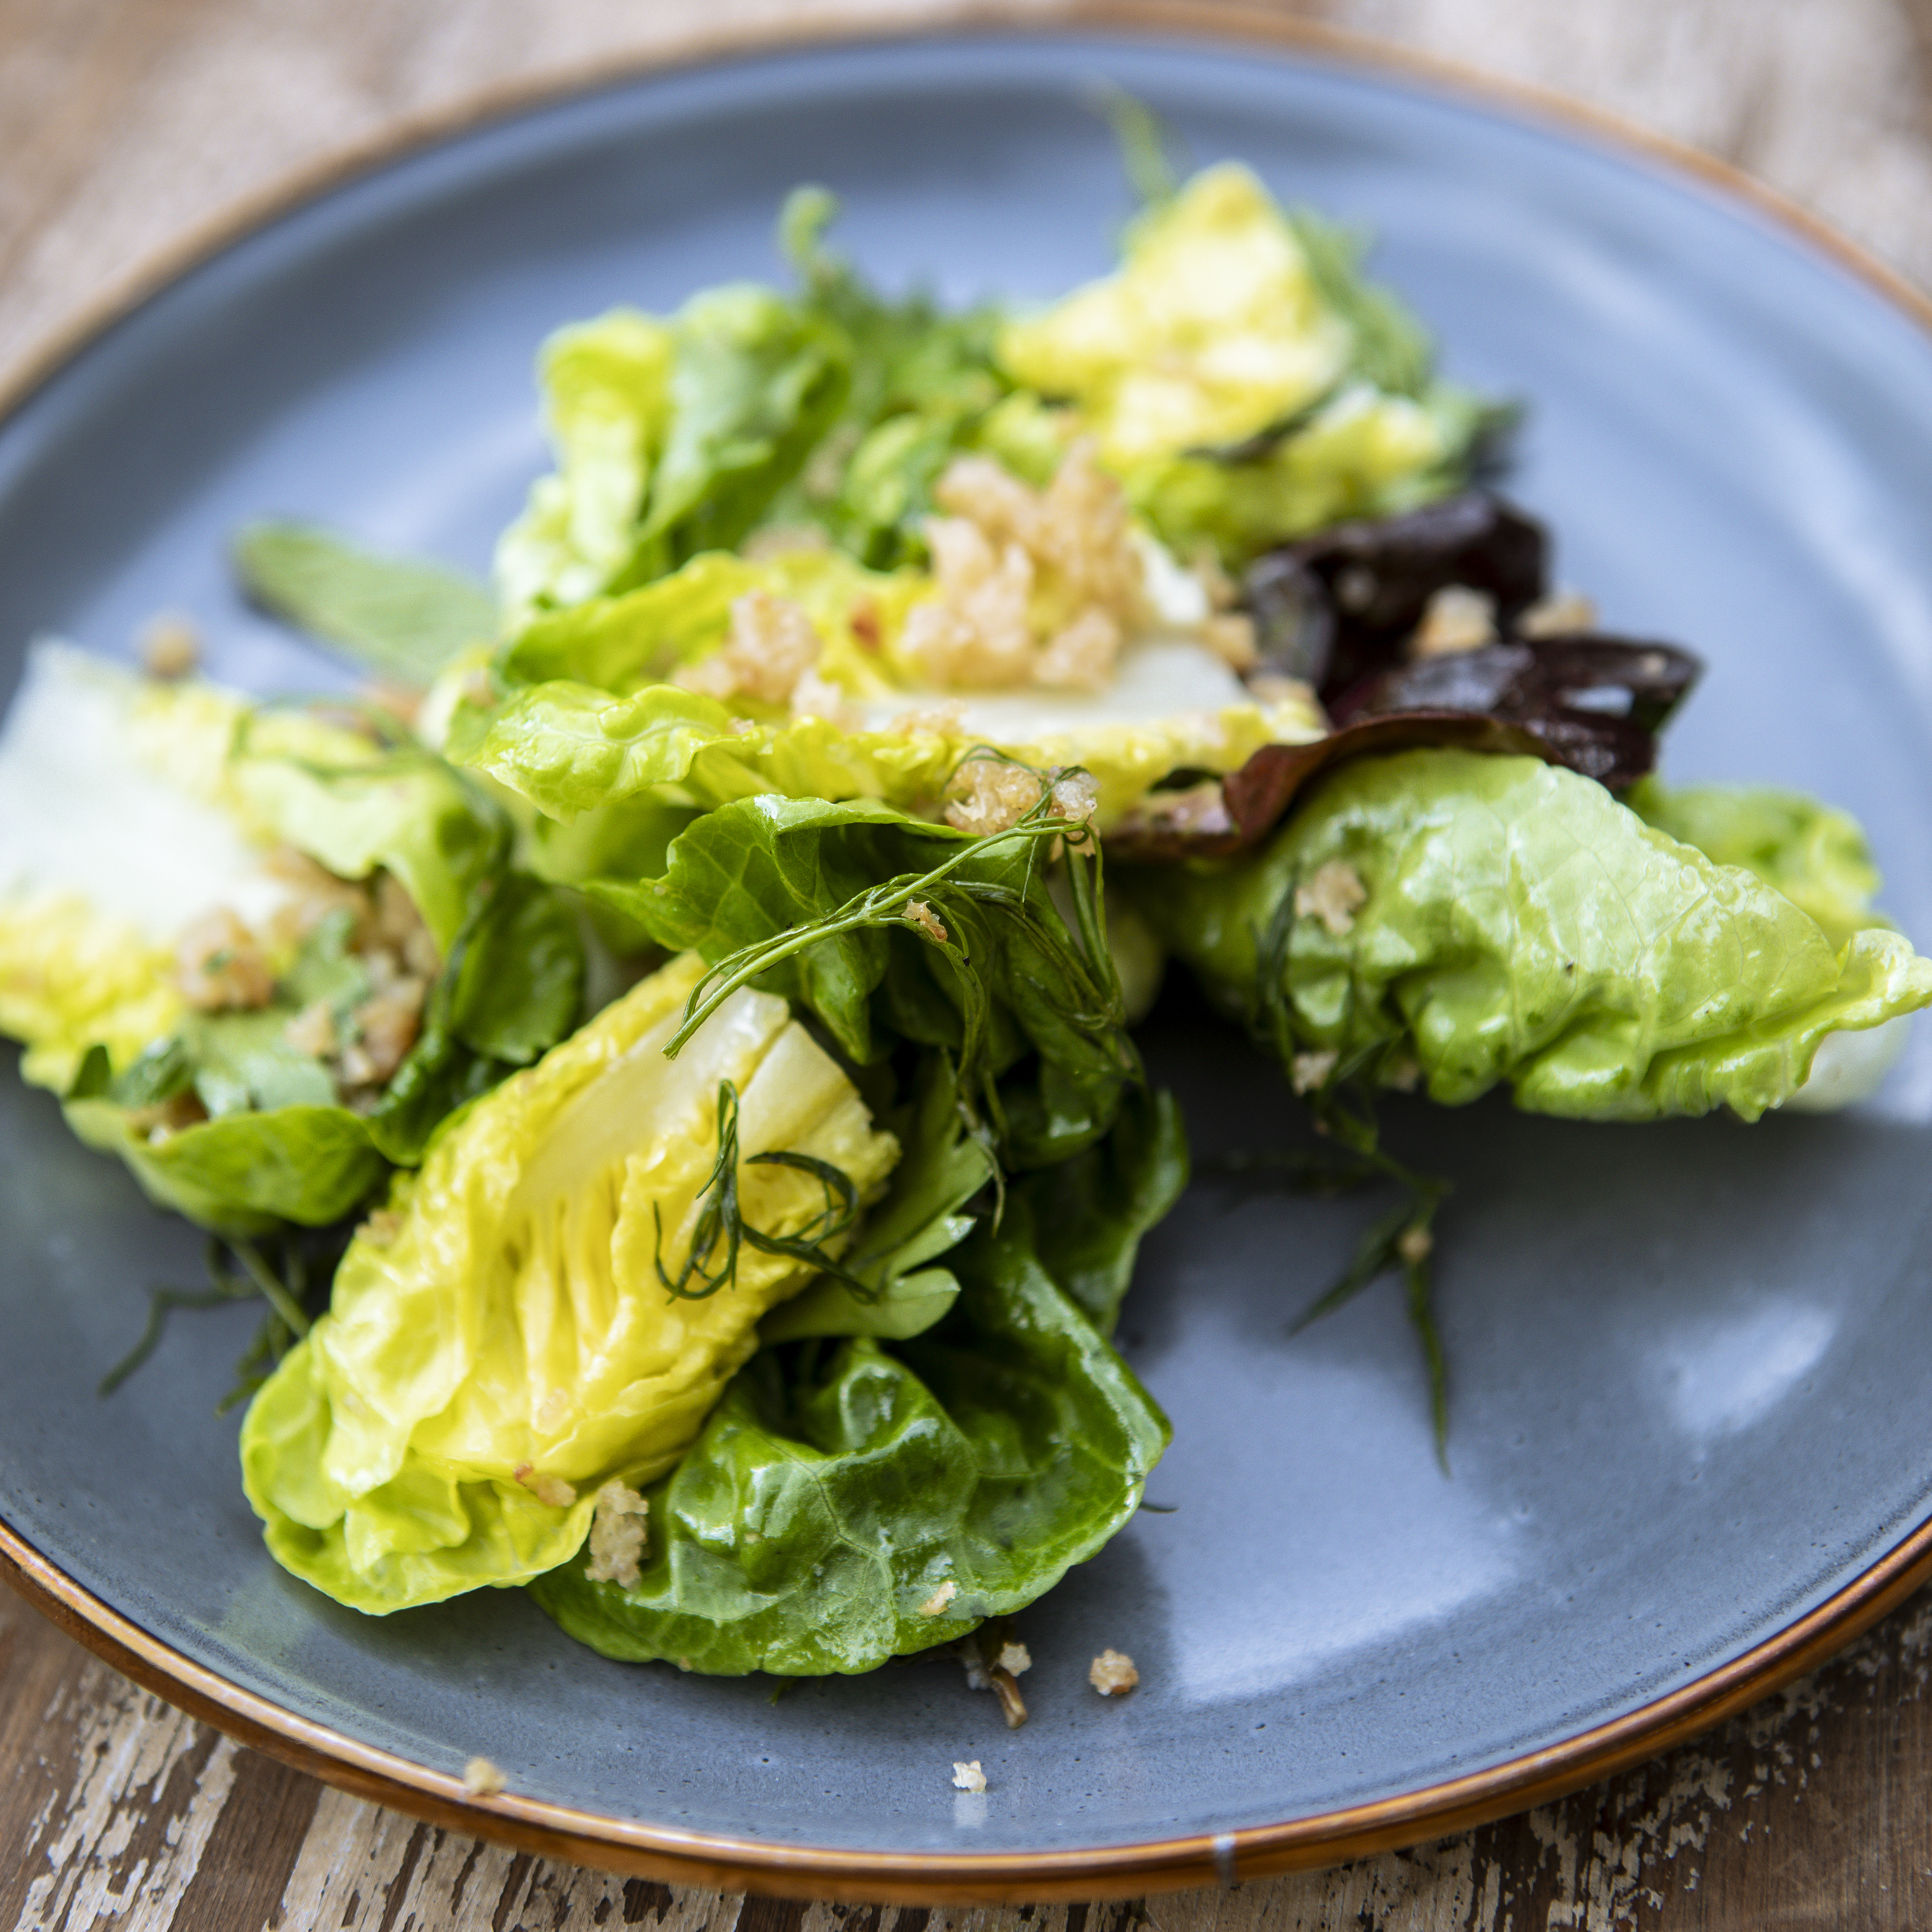 Annie Starke's Simple Green Salad